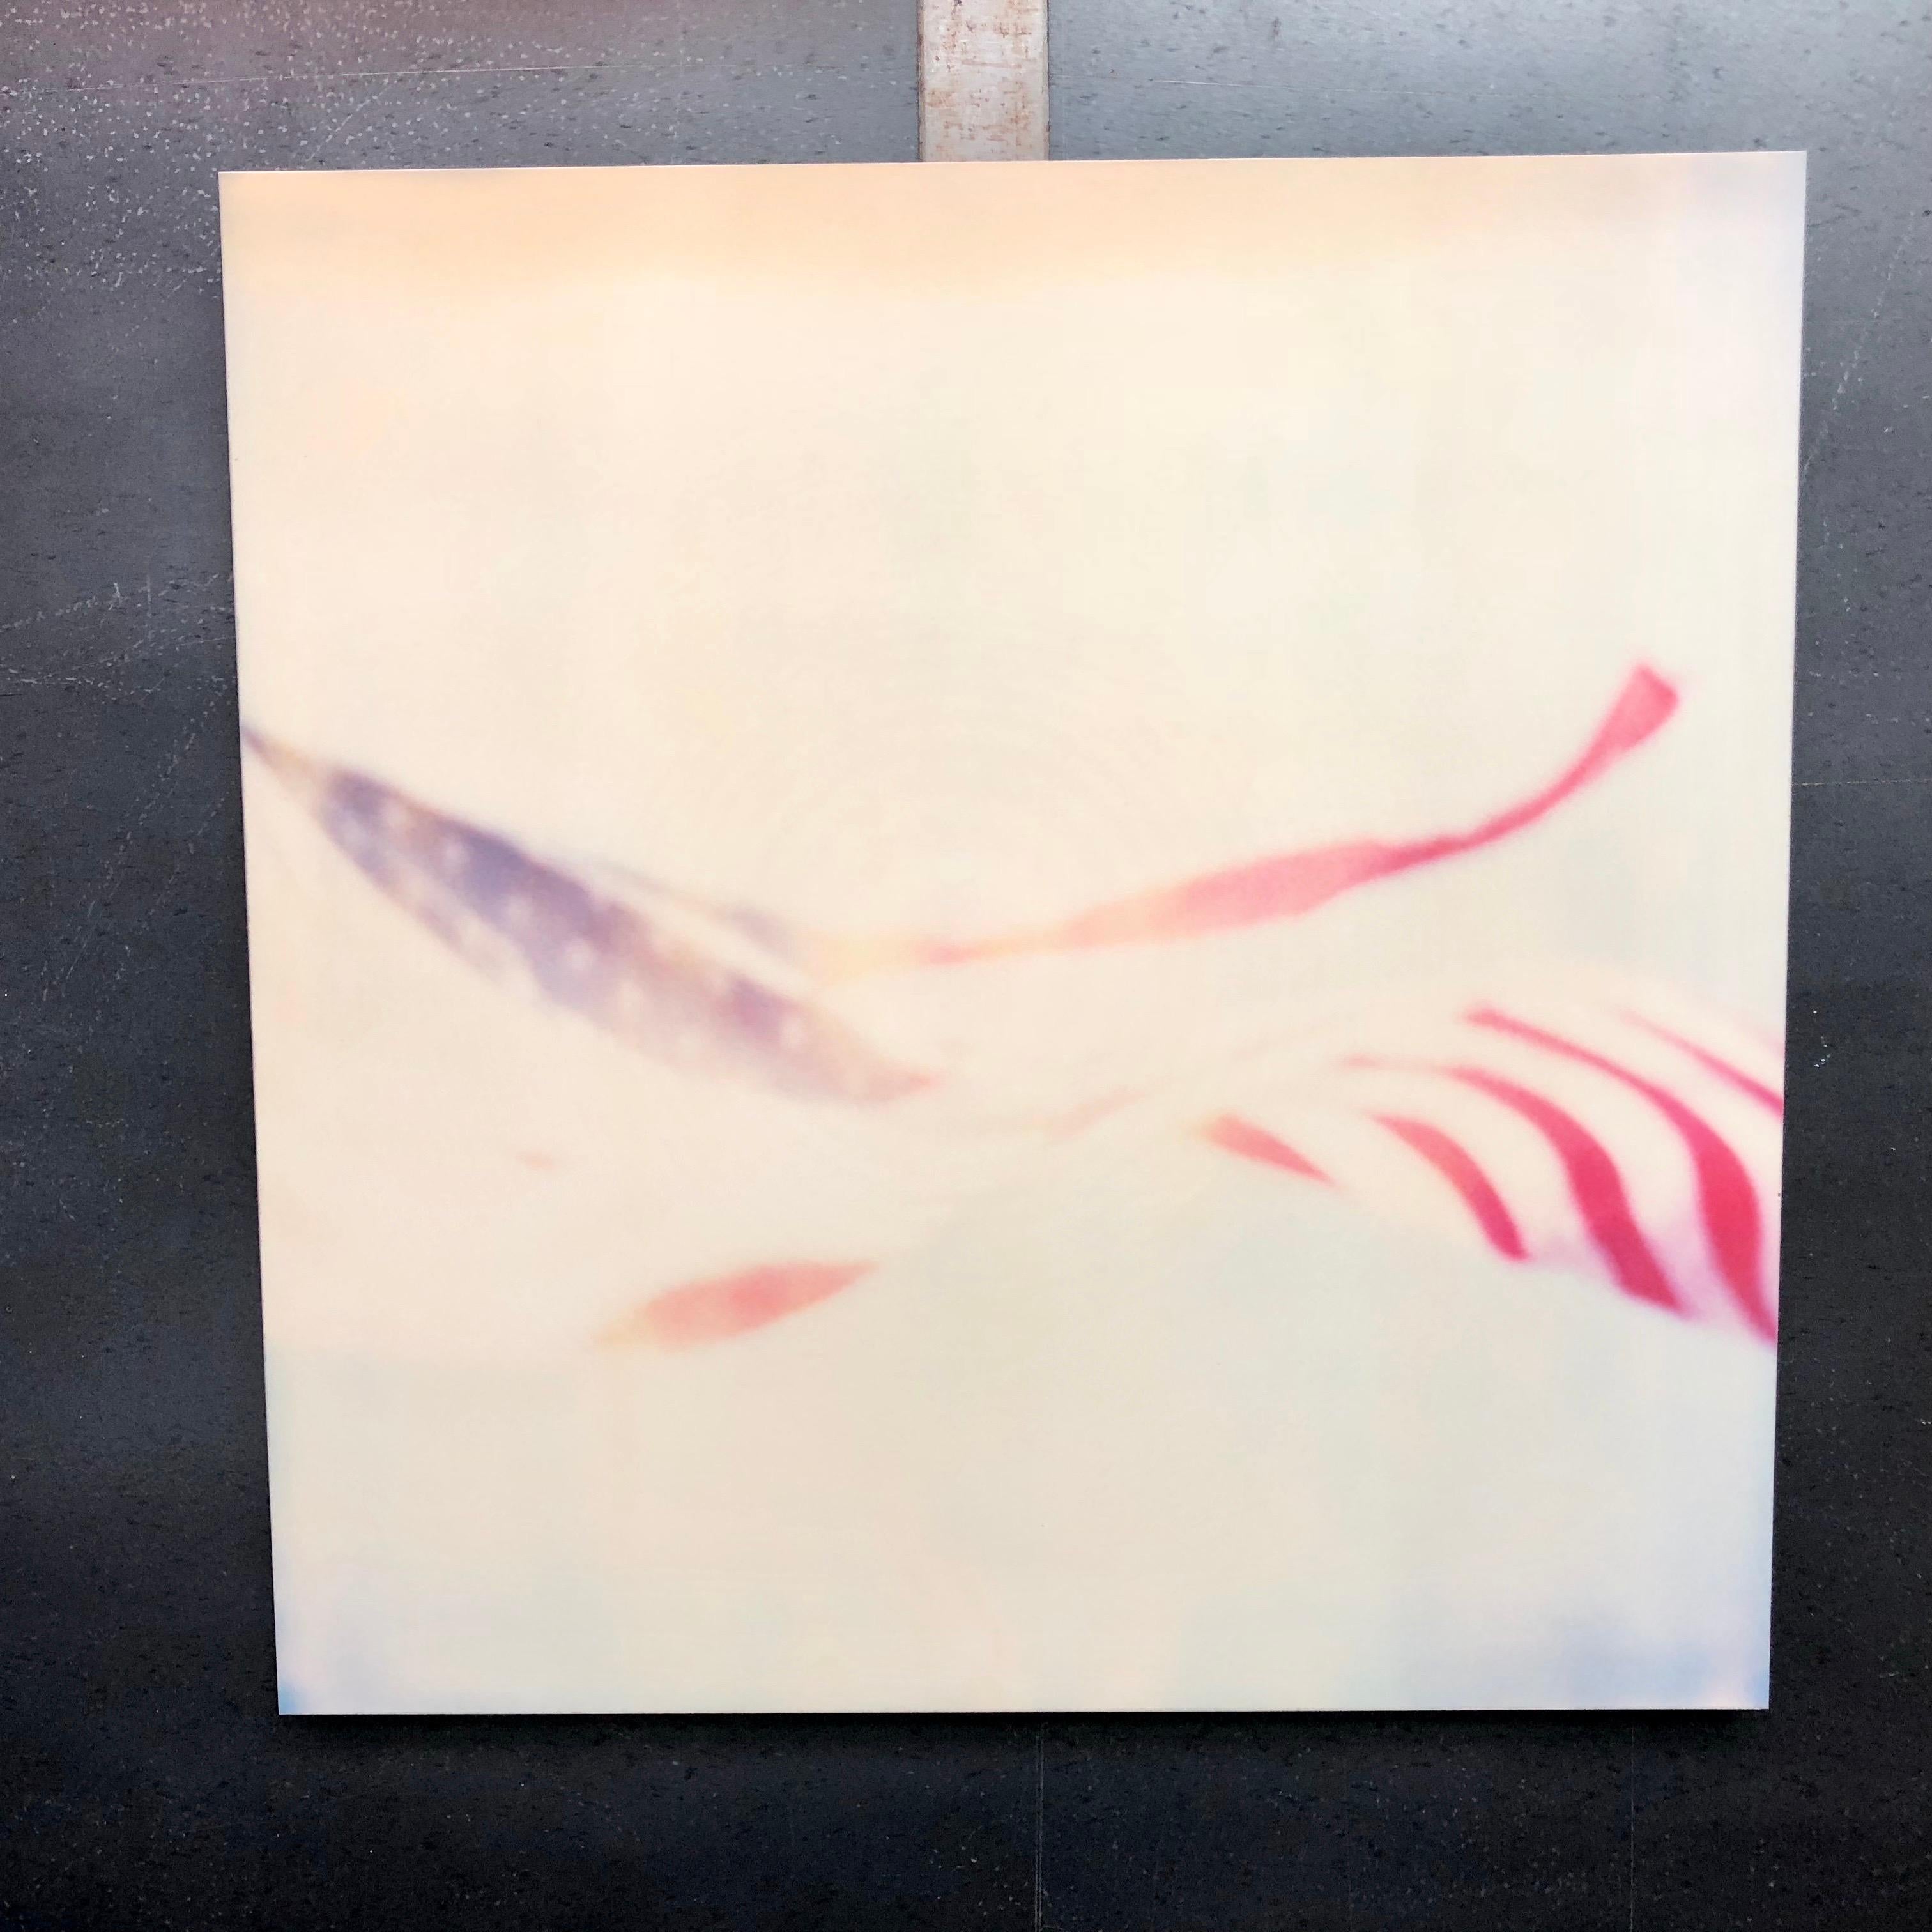 Primärfarben - Contemporary, Abstrakt, Landschaft, USA, Polaroid, Flagge – Photograph von Stefanie Schneider